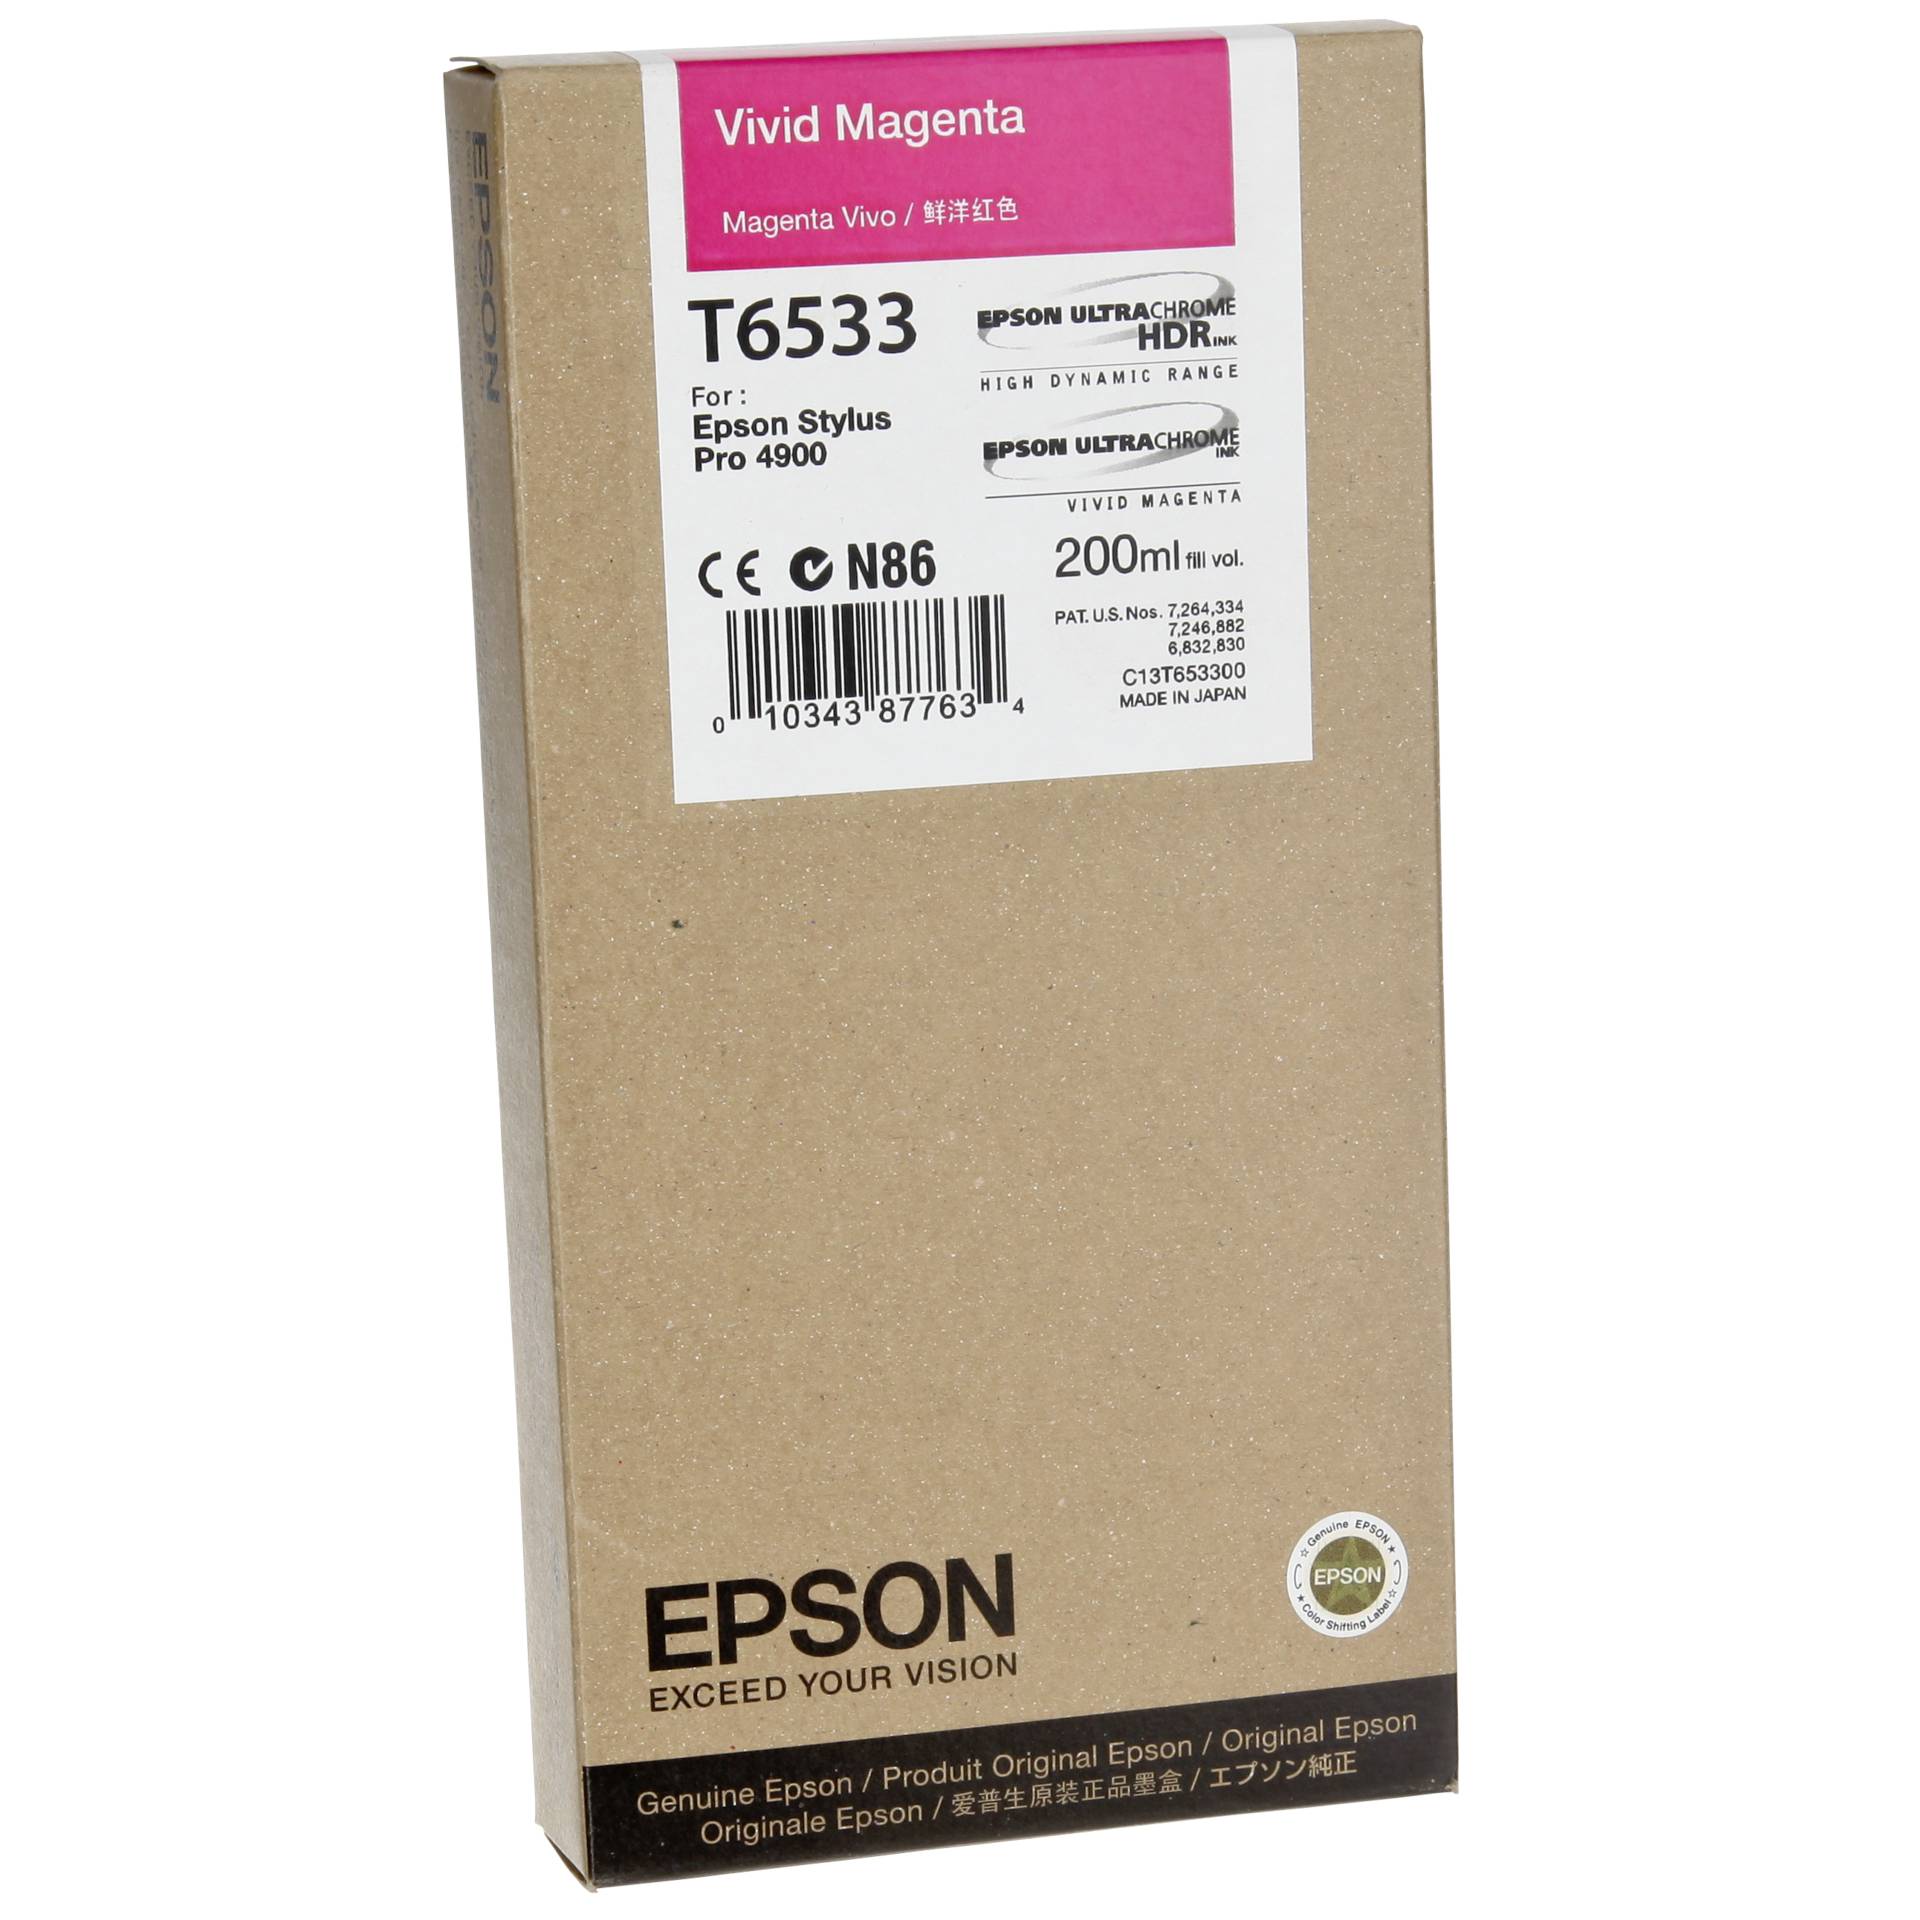 Epson T6533 Vivid Magenta-Tintenpatrone (200 ml)